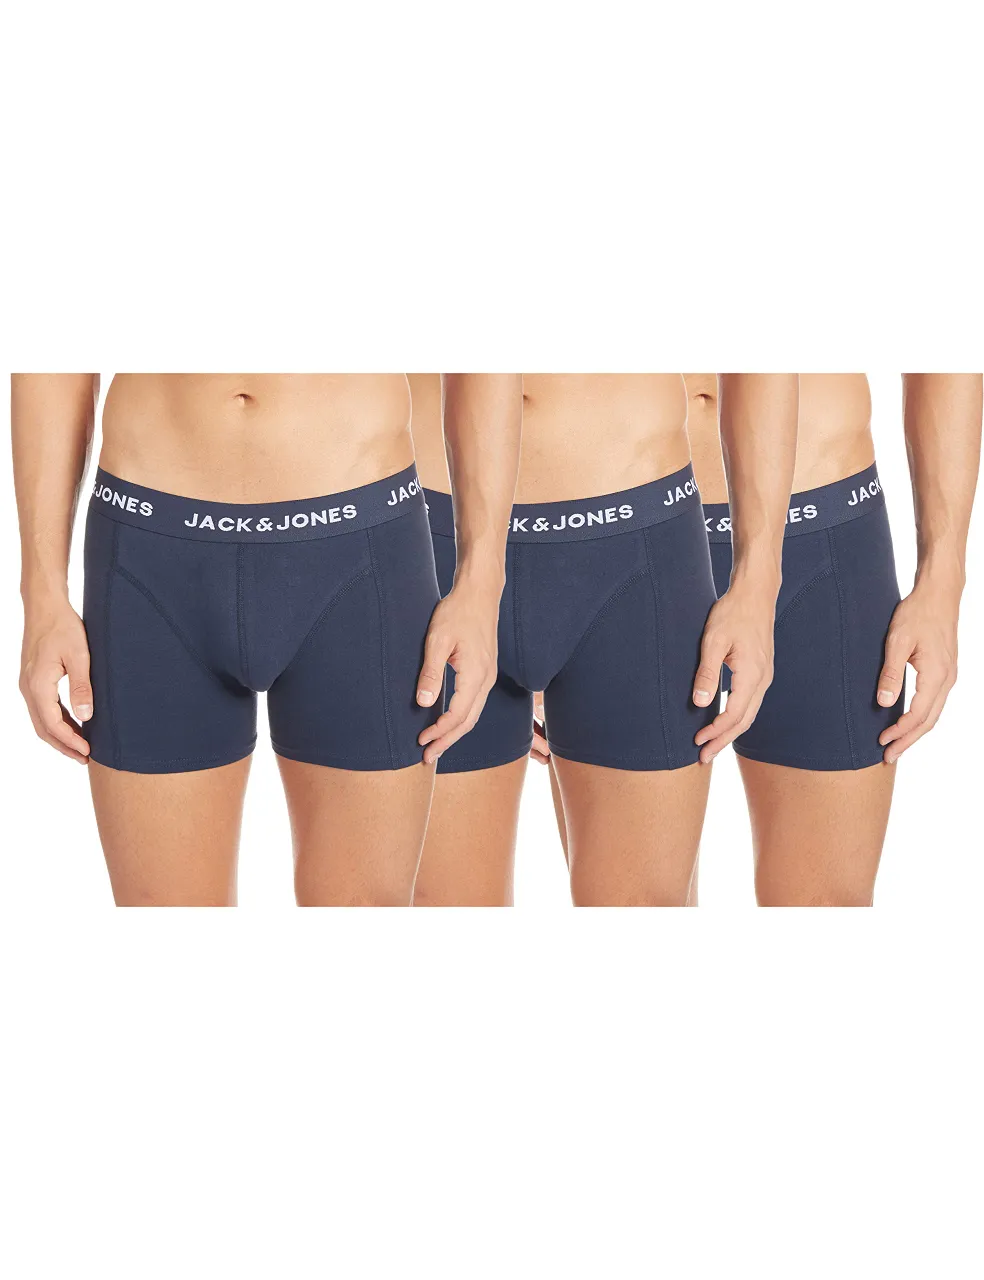 Jack and Jones Men Sense 3 Pack Trunks Mens Navy/Navy 2X